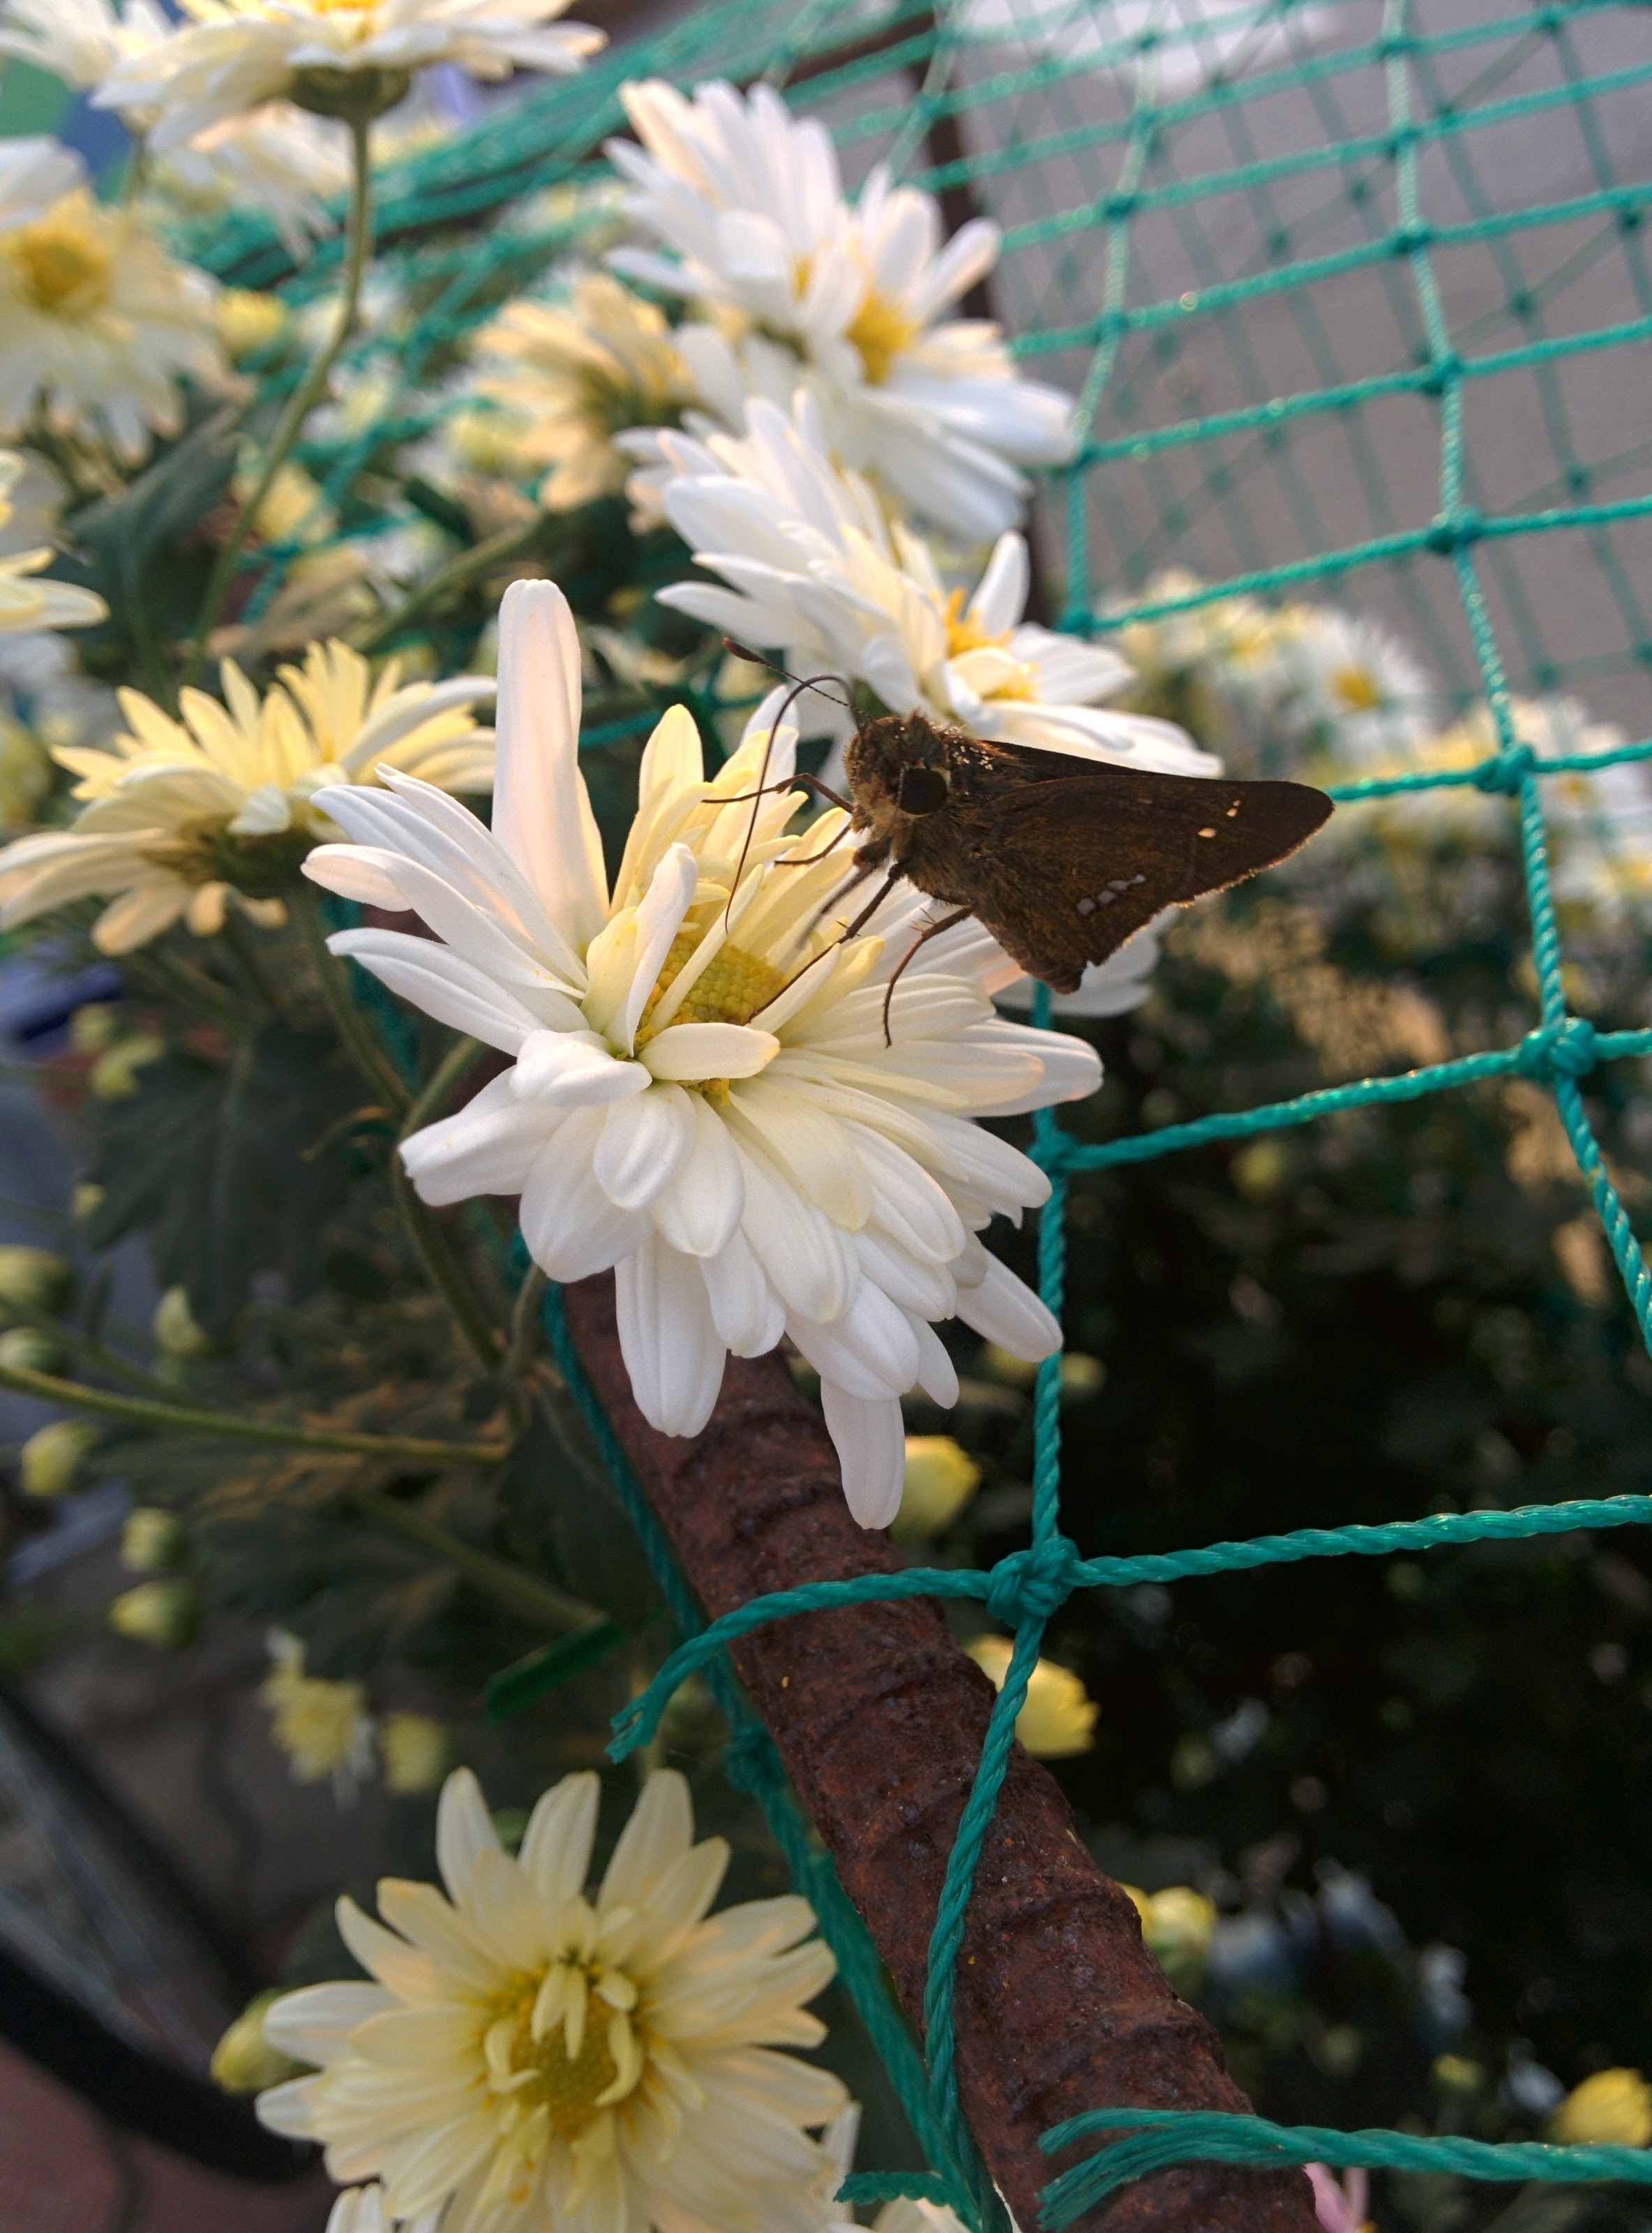 IMG_20151003_172746.jpg 하얀색 국화꽃 찾은 줄점팔랑나비